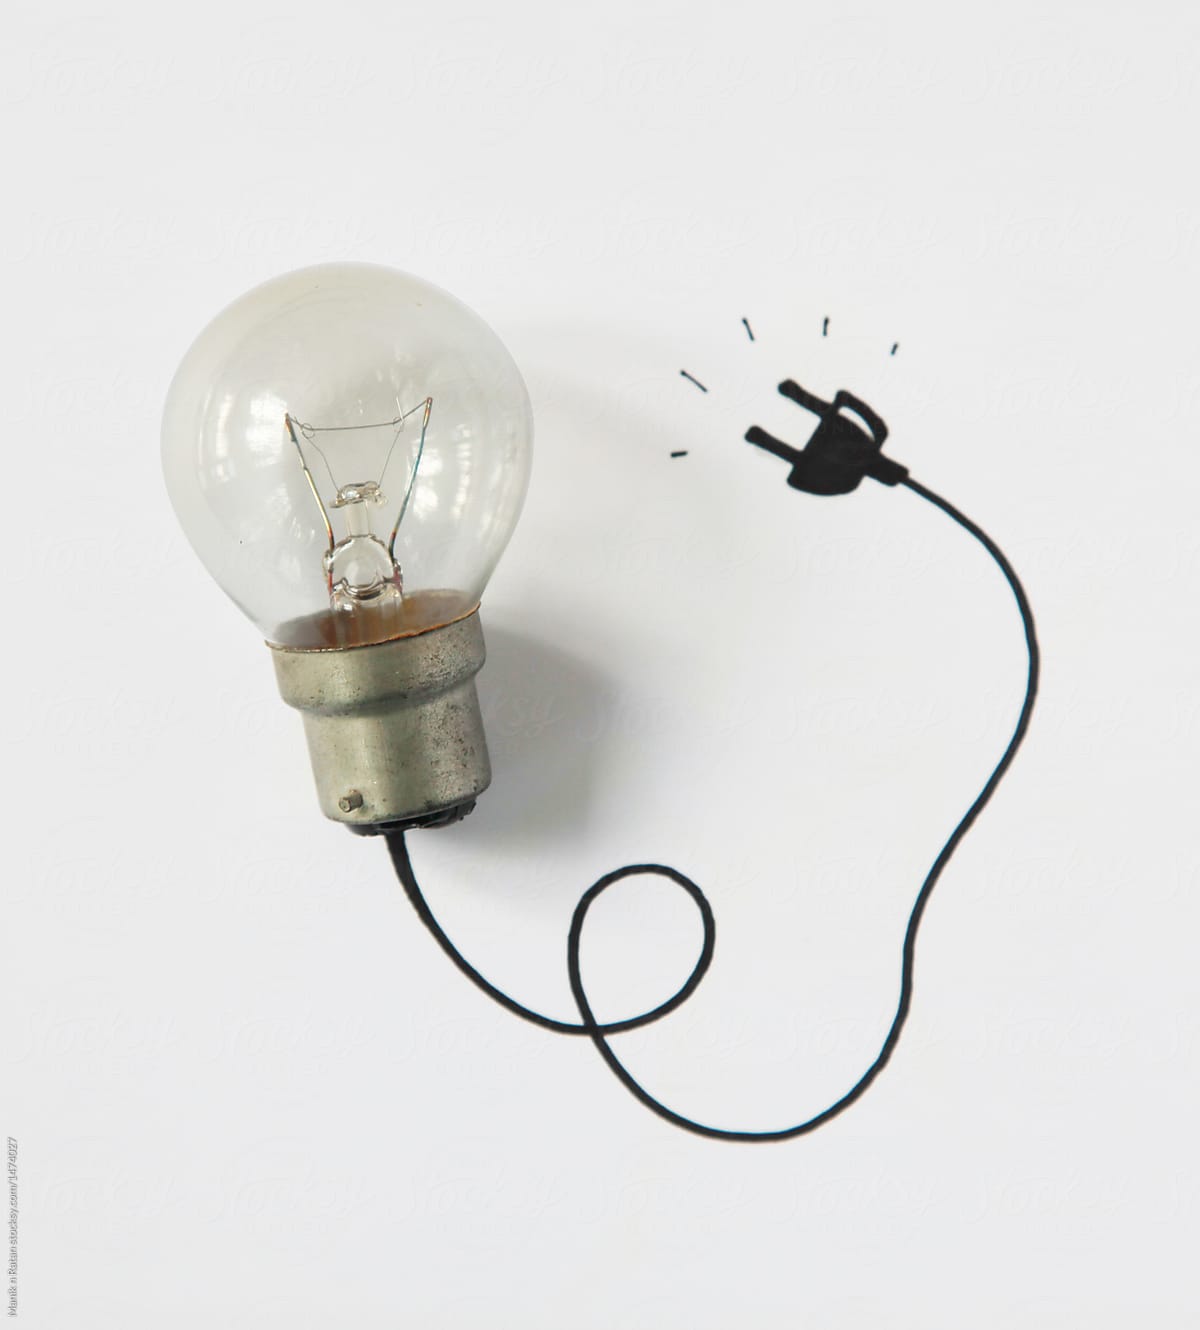 Power for idea bulb